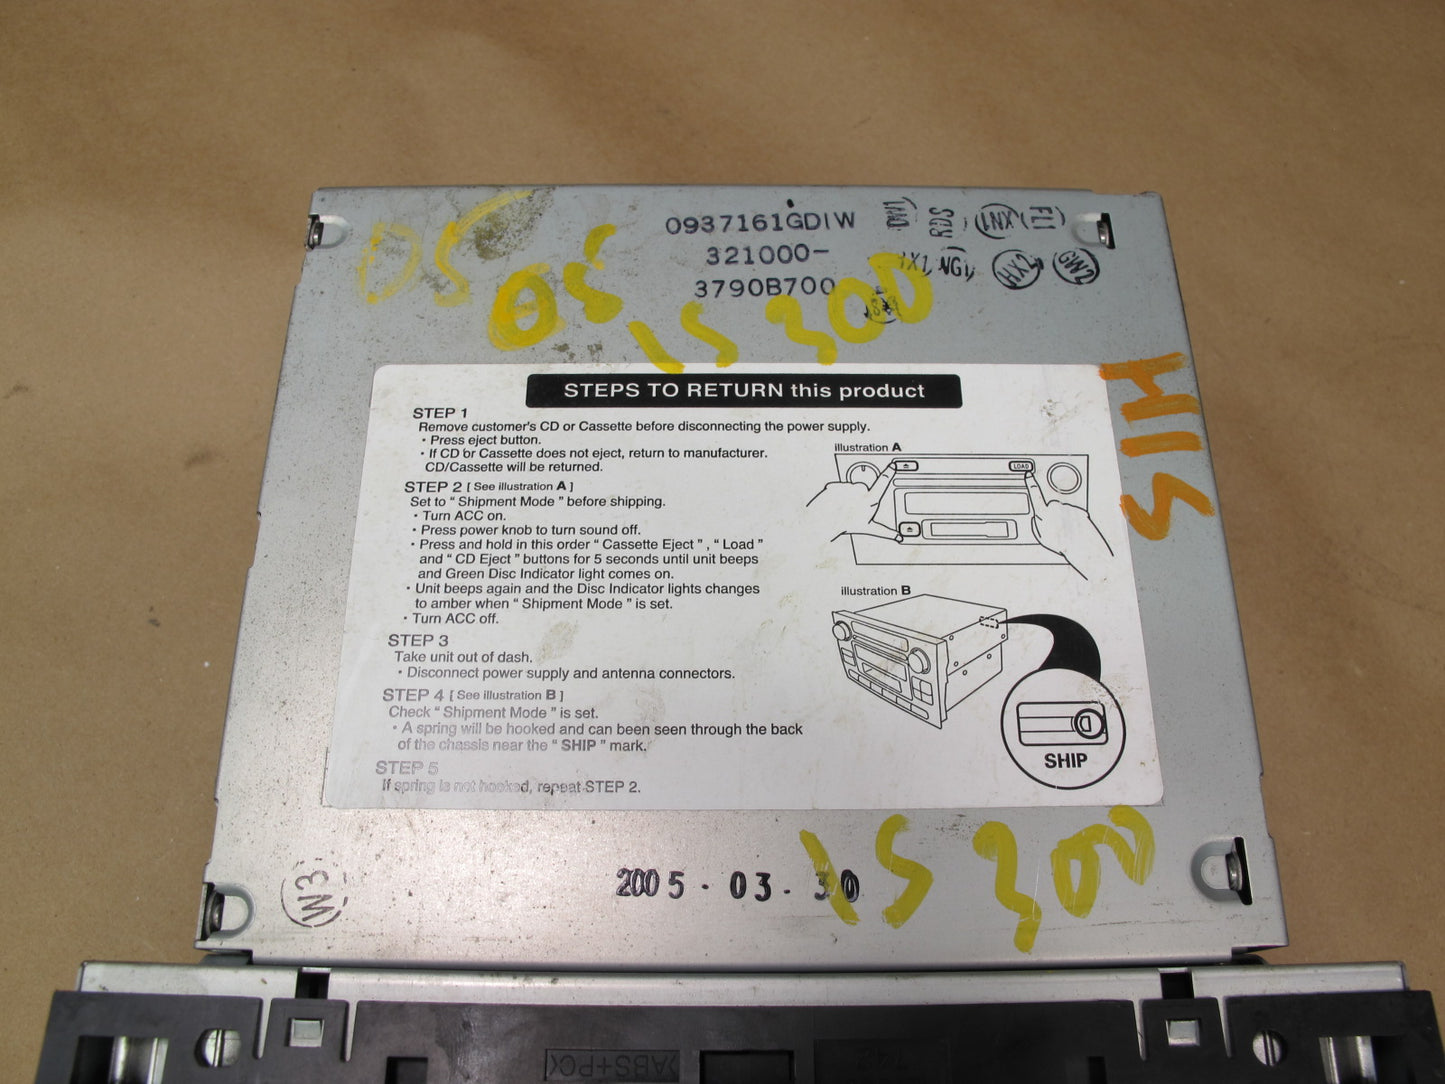 04-05 Lexus IS300 AM FM Radio CD Changer Cassette Receiver Head Unit OEM